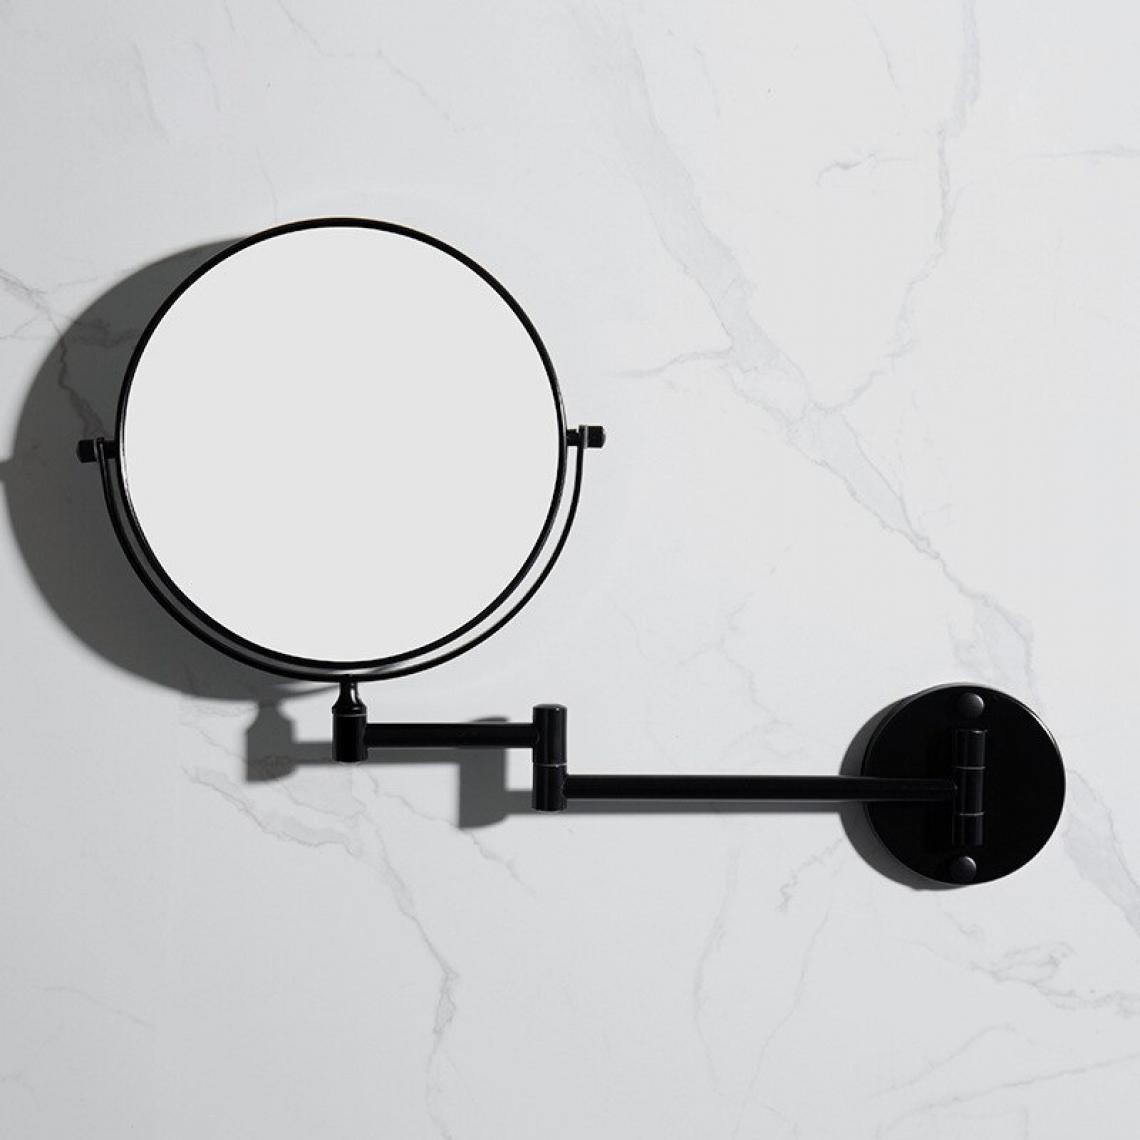 Universal - Salle de bains miroir de beauté salle de bains miroir noir installation murale miroir de maquillage loupe pliante miroir mural suspendu |(Le noir) - Miroir de salle de bain